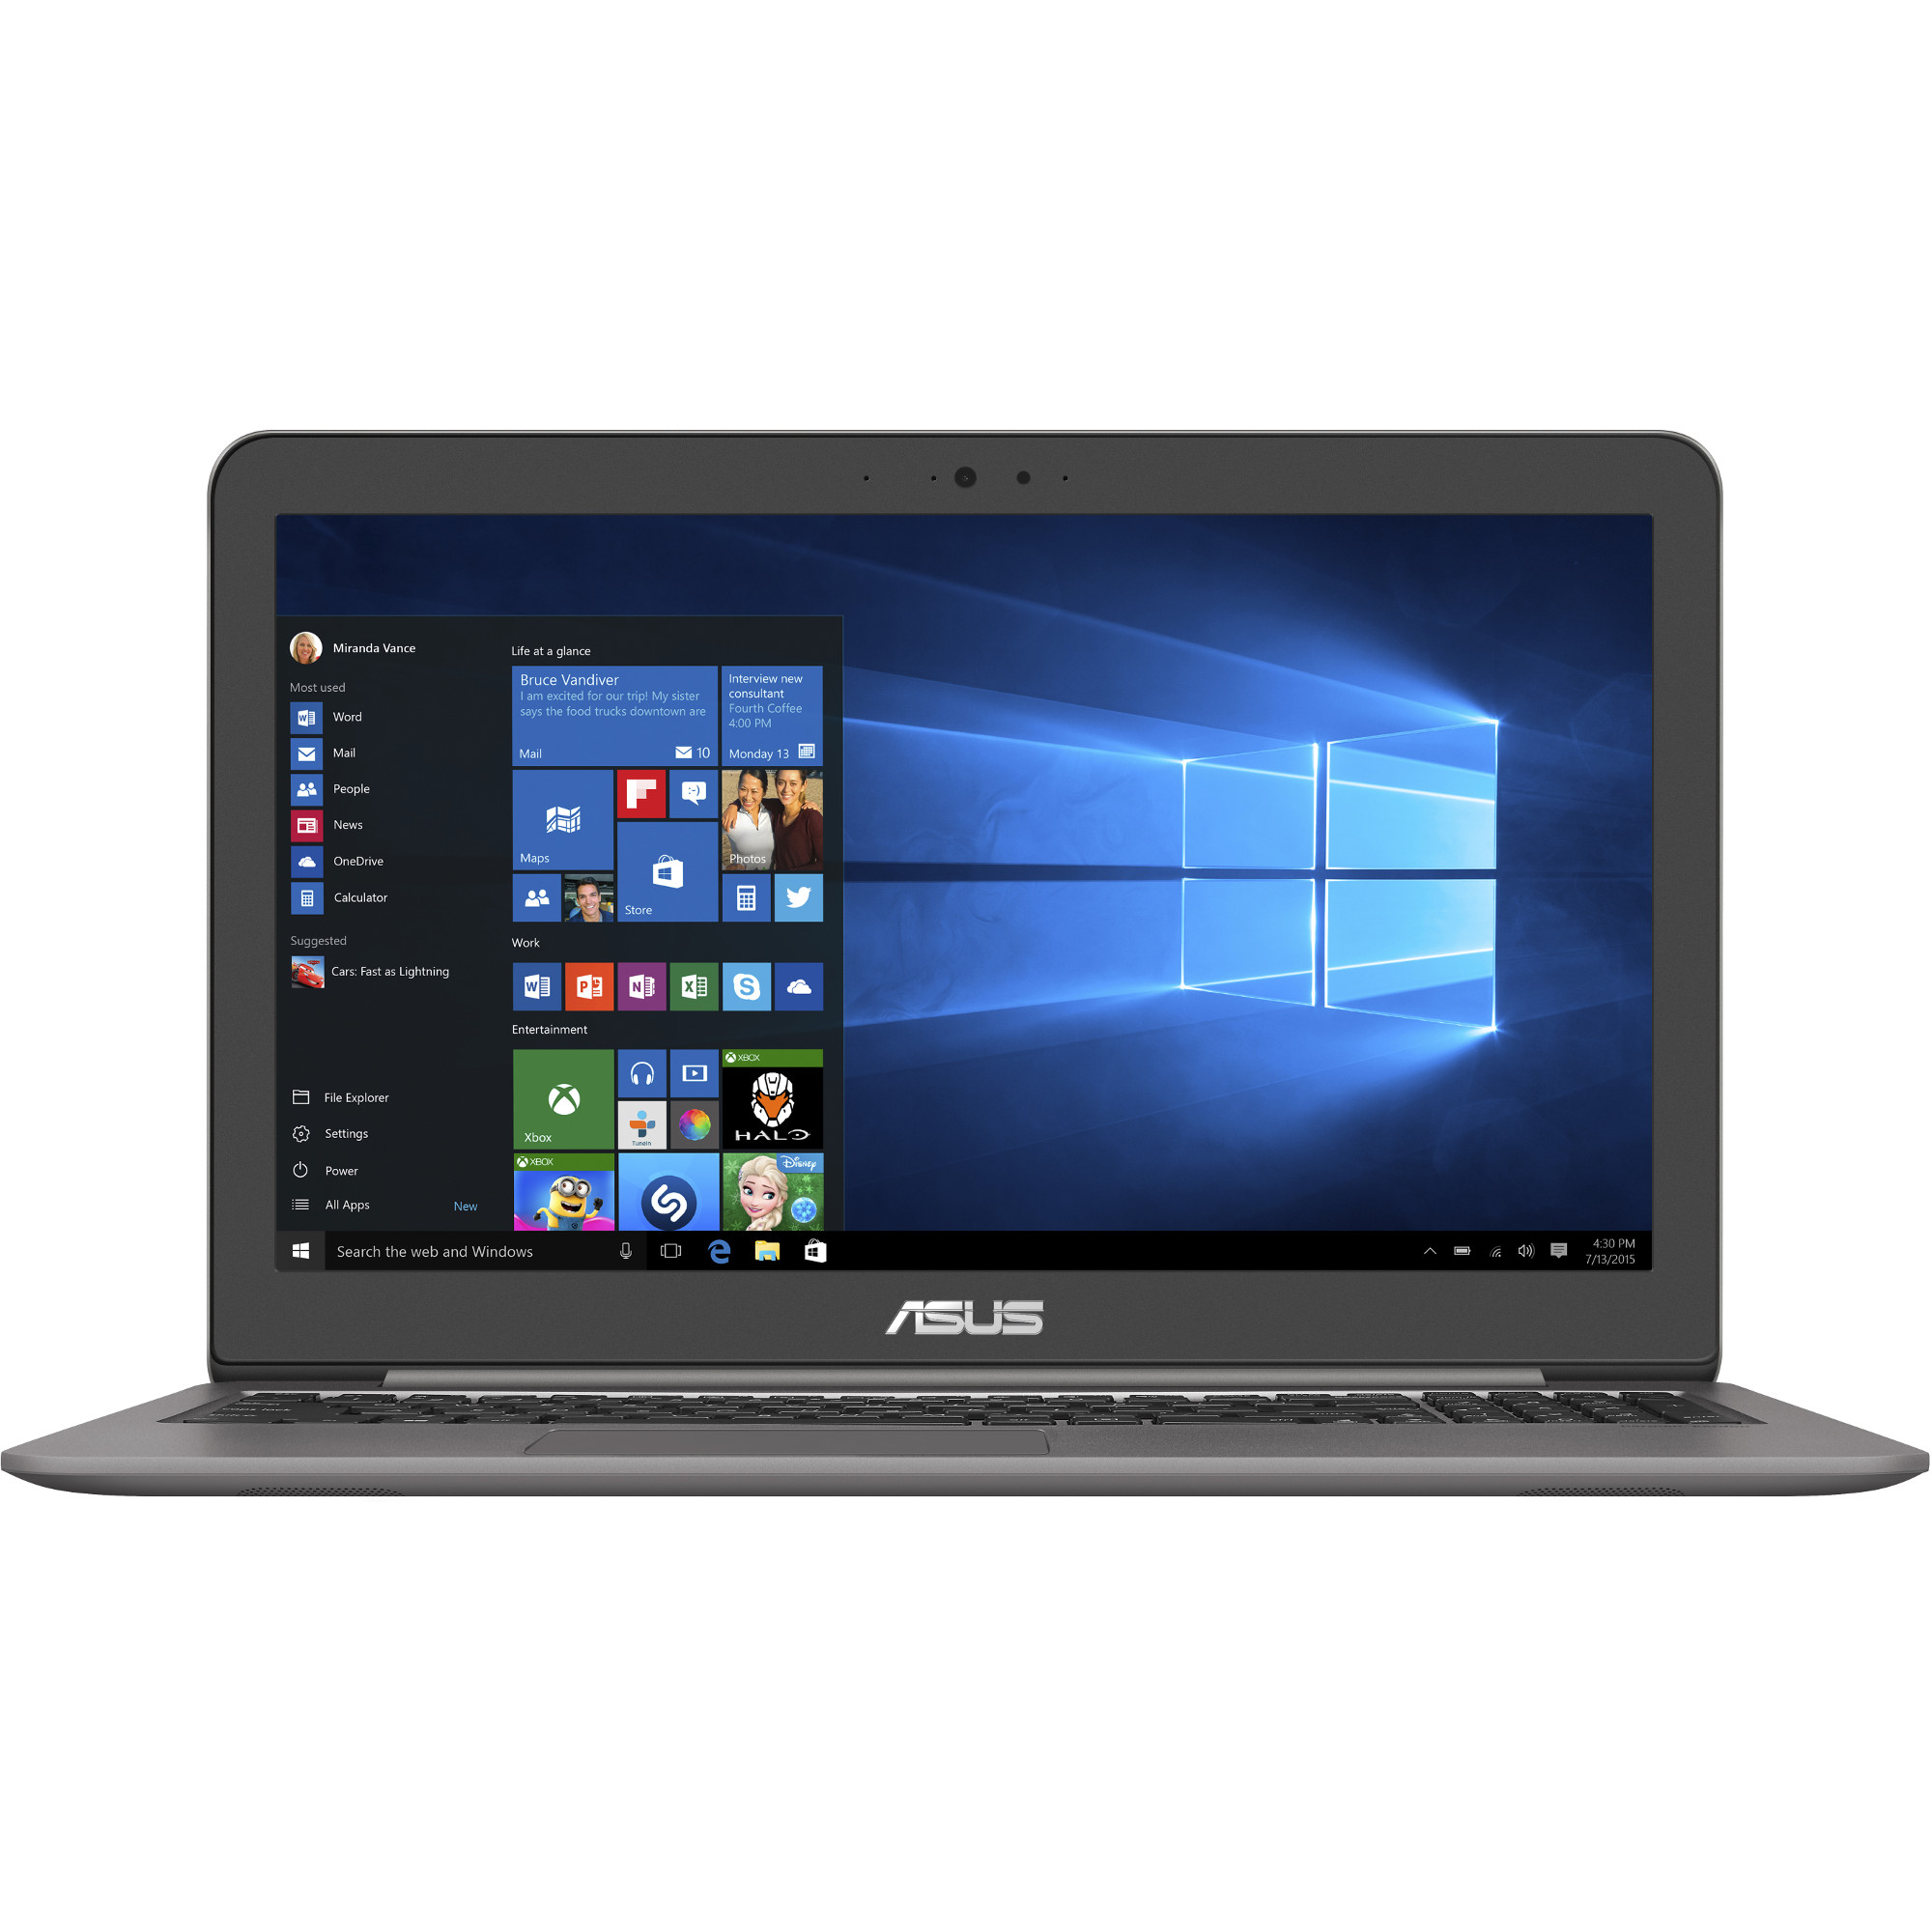 Laptop ASUS UX510UX, Intel Core i7-7500U, 12GB DDR4, HDD 1TB + SSD 128GB, nVidia GeForce GTX 950M 2GB, Windows 10